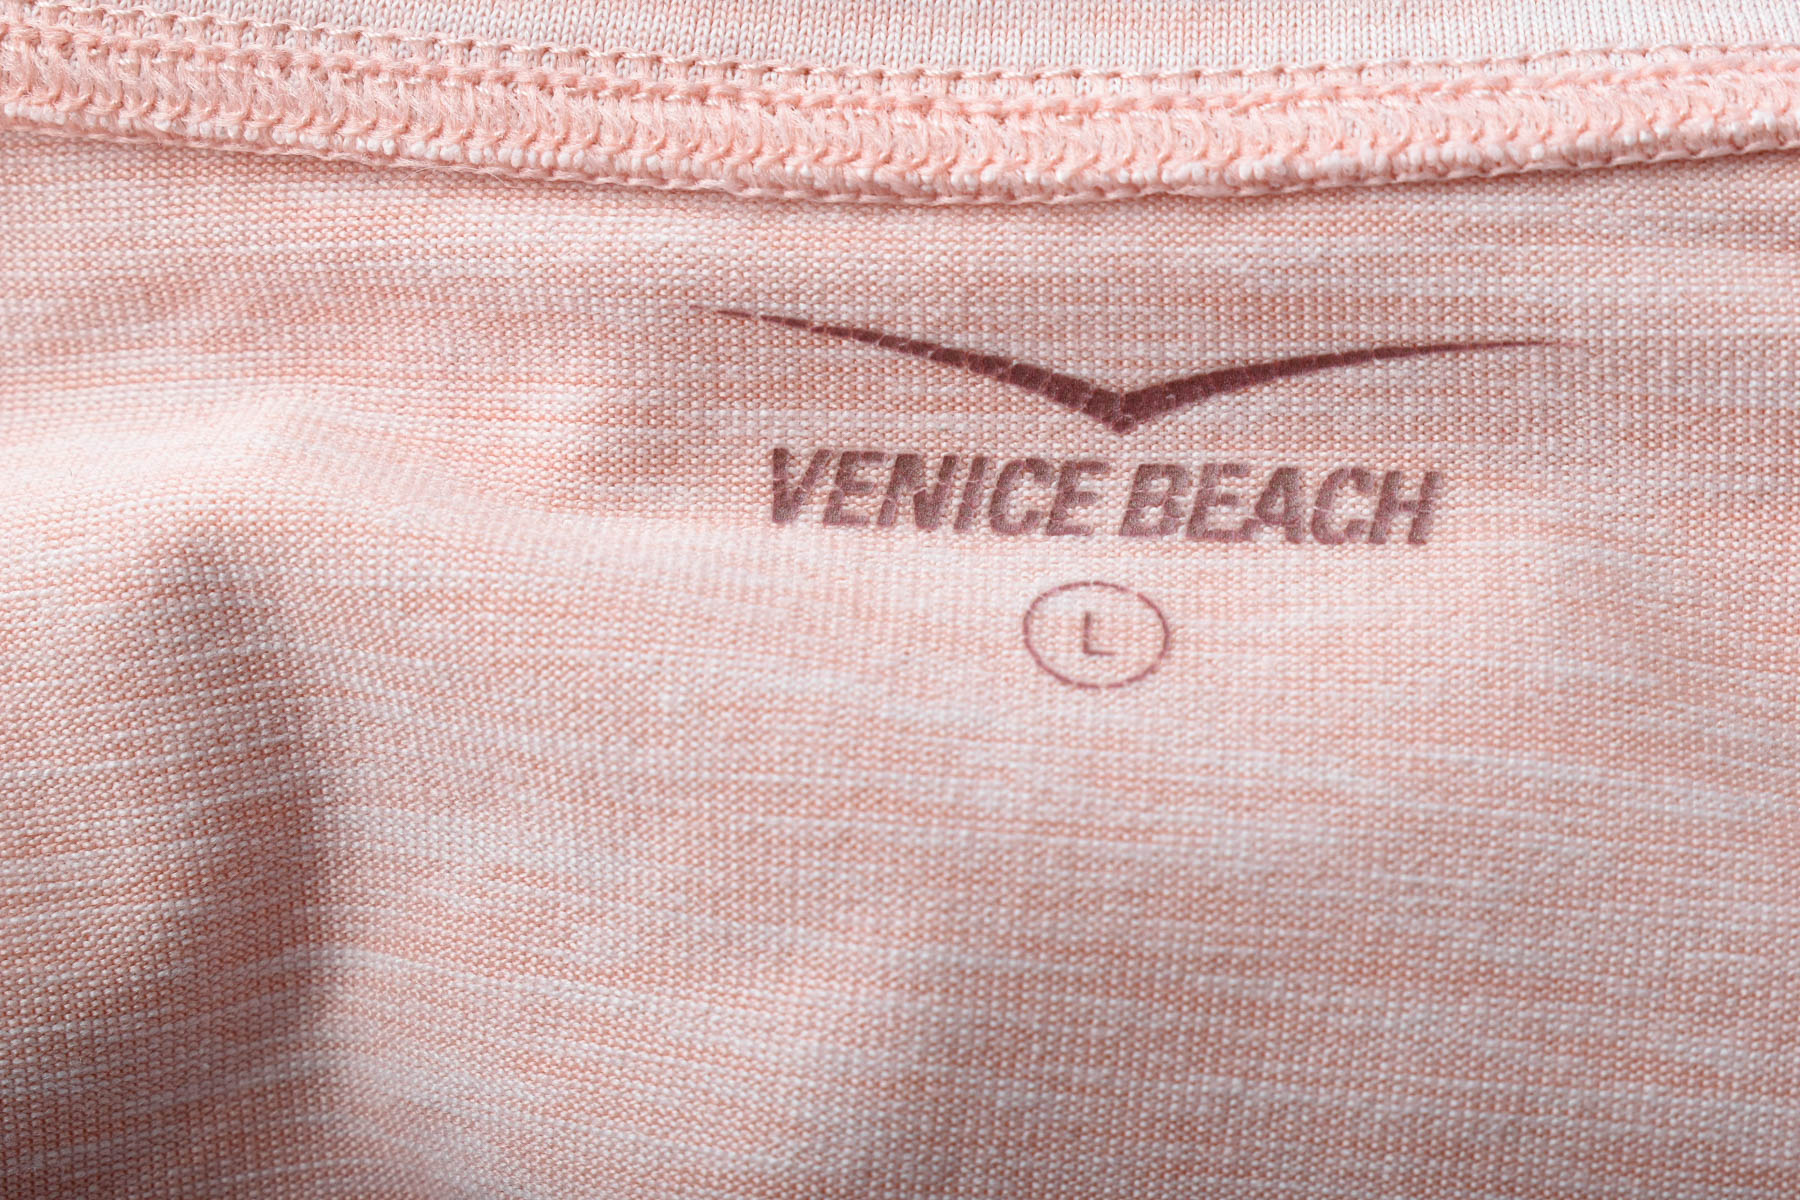 Tricou de damă - Venice Beach - 2